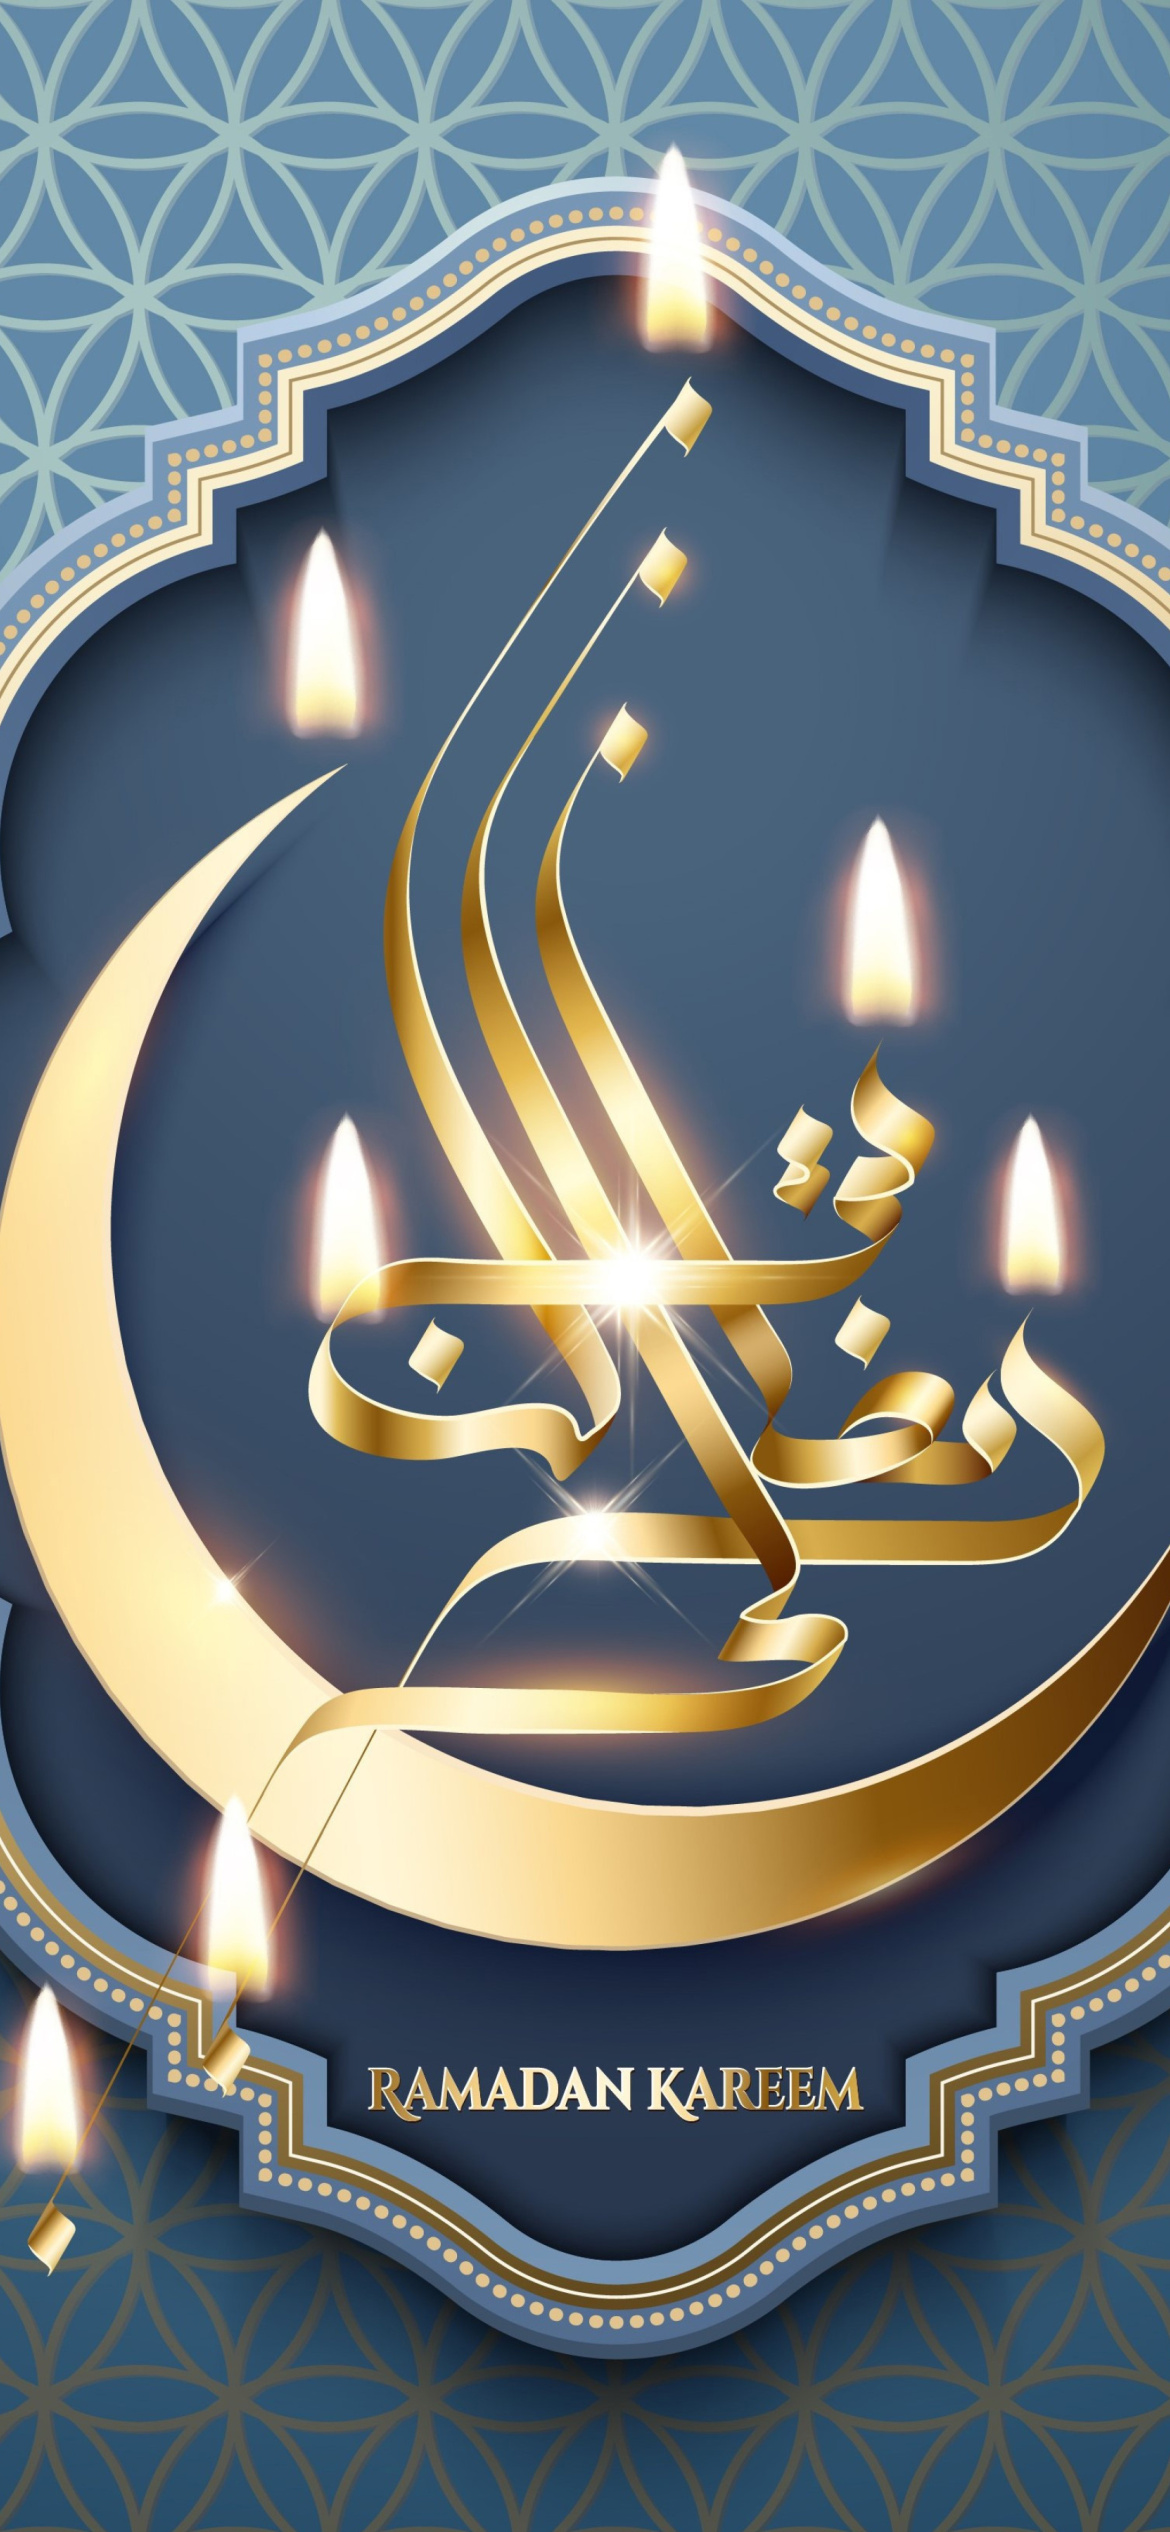 Sfondi Ramadan Prayer Times Iraq, Iran 1170x2532